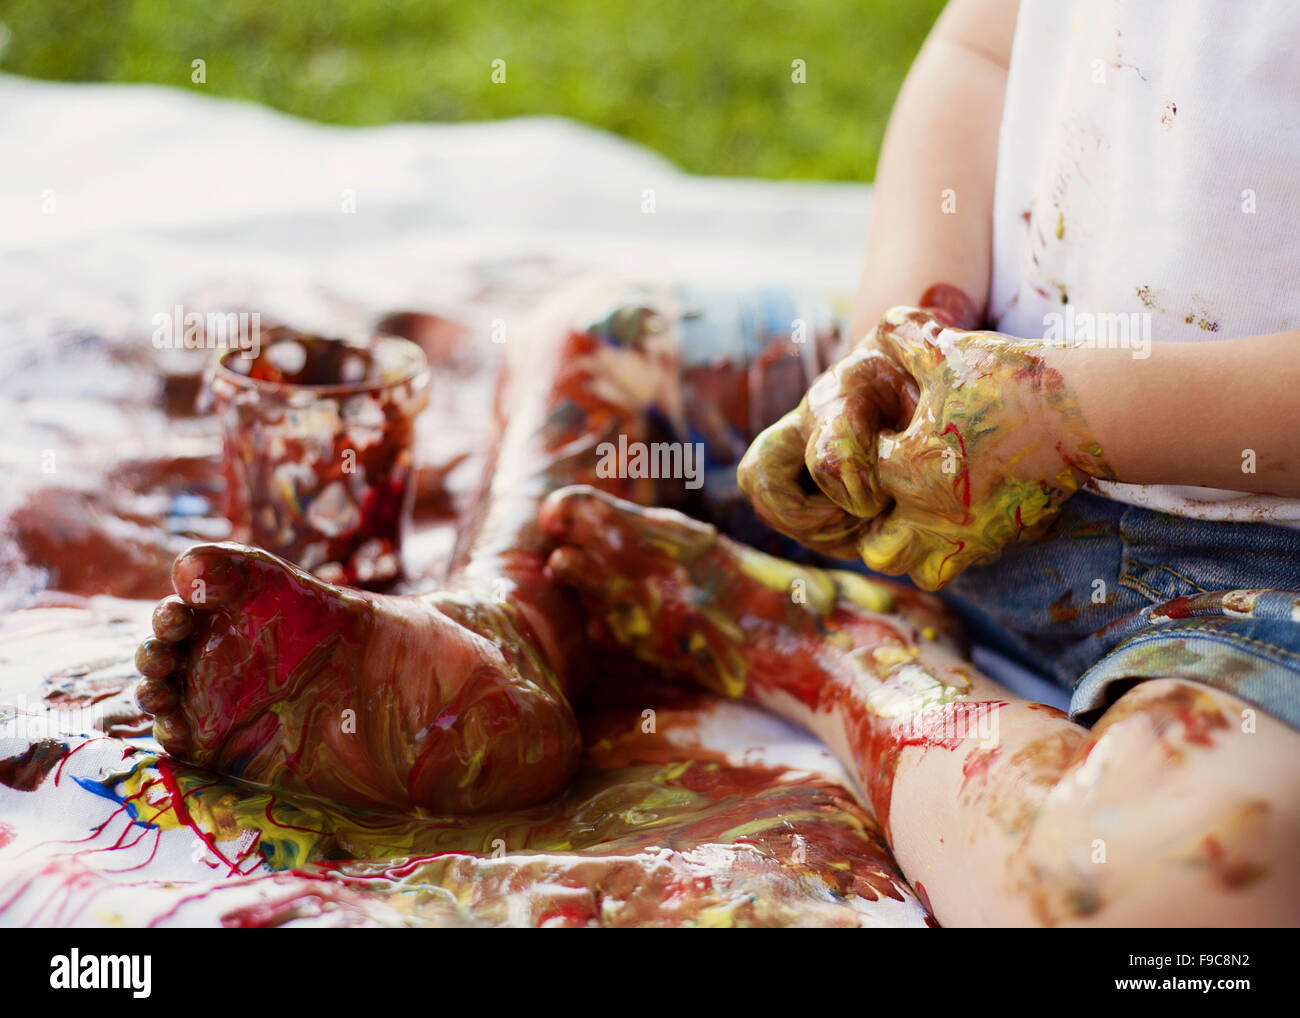 Carino bambino dipinto con colori vivaci in giardino Foto Stock